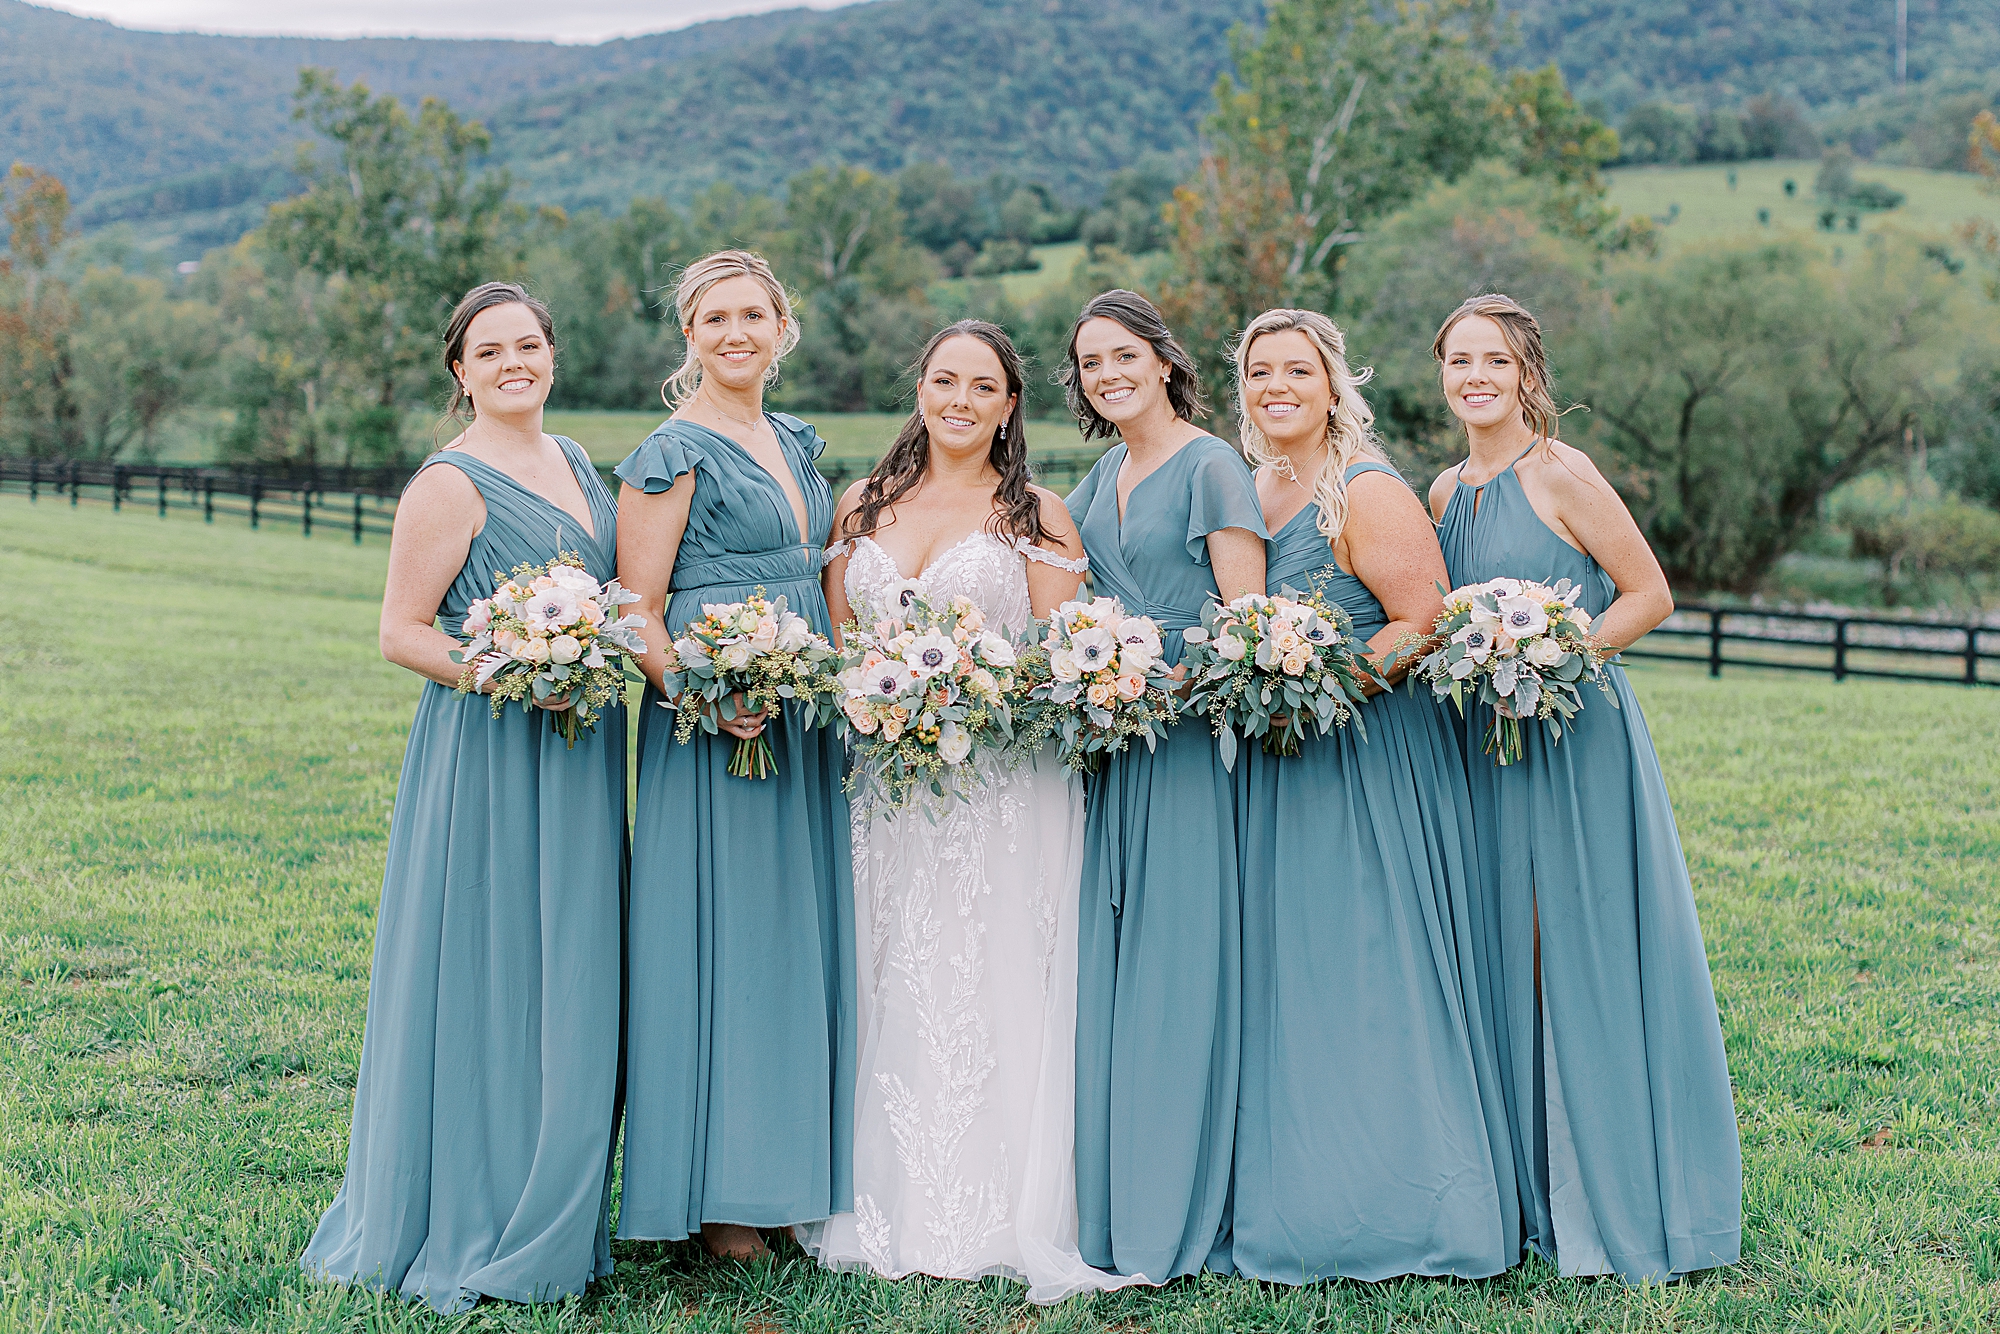 Bridesmaids wearing blue at Fall wedding.